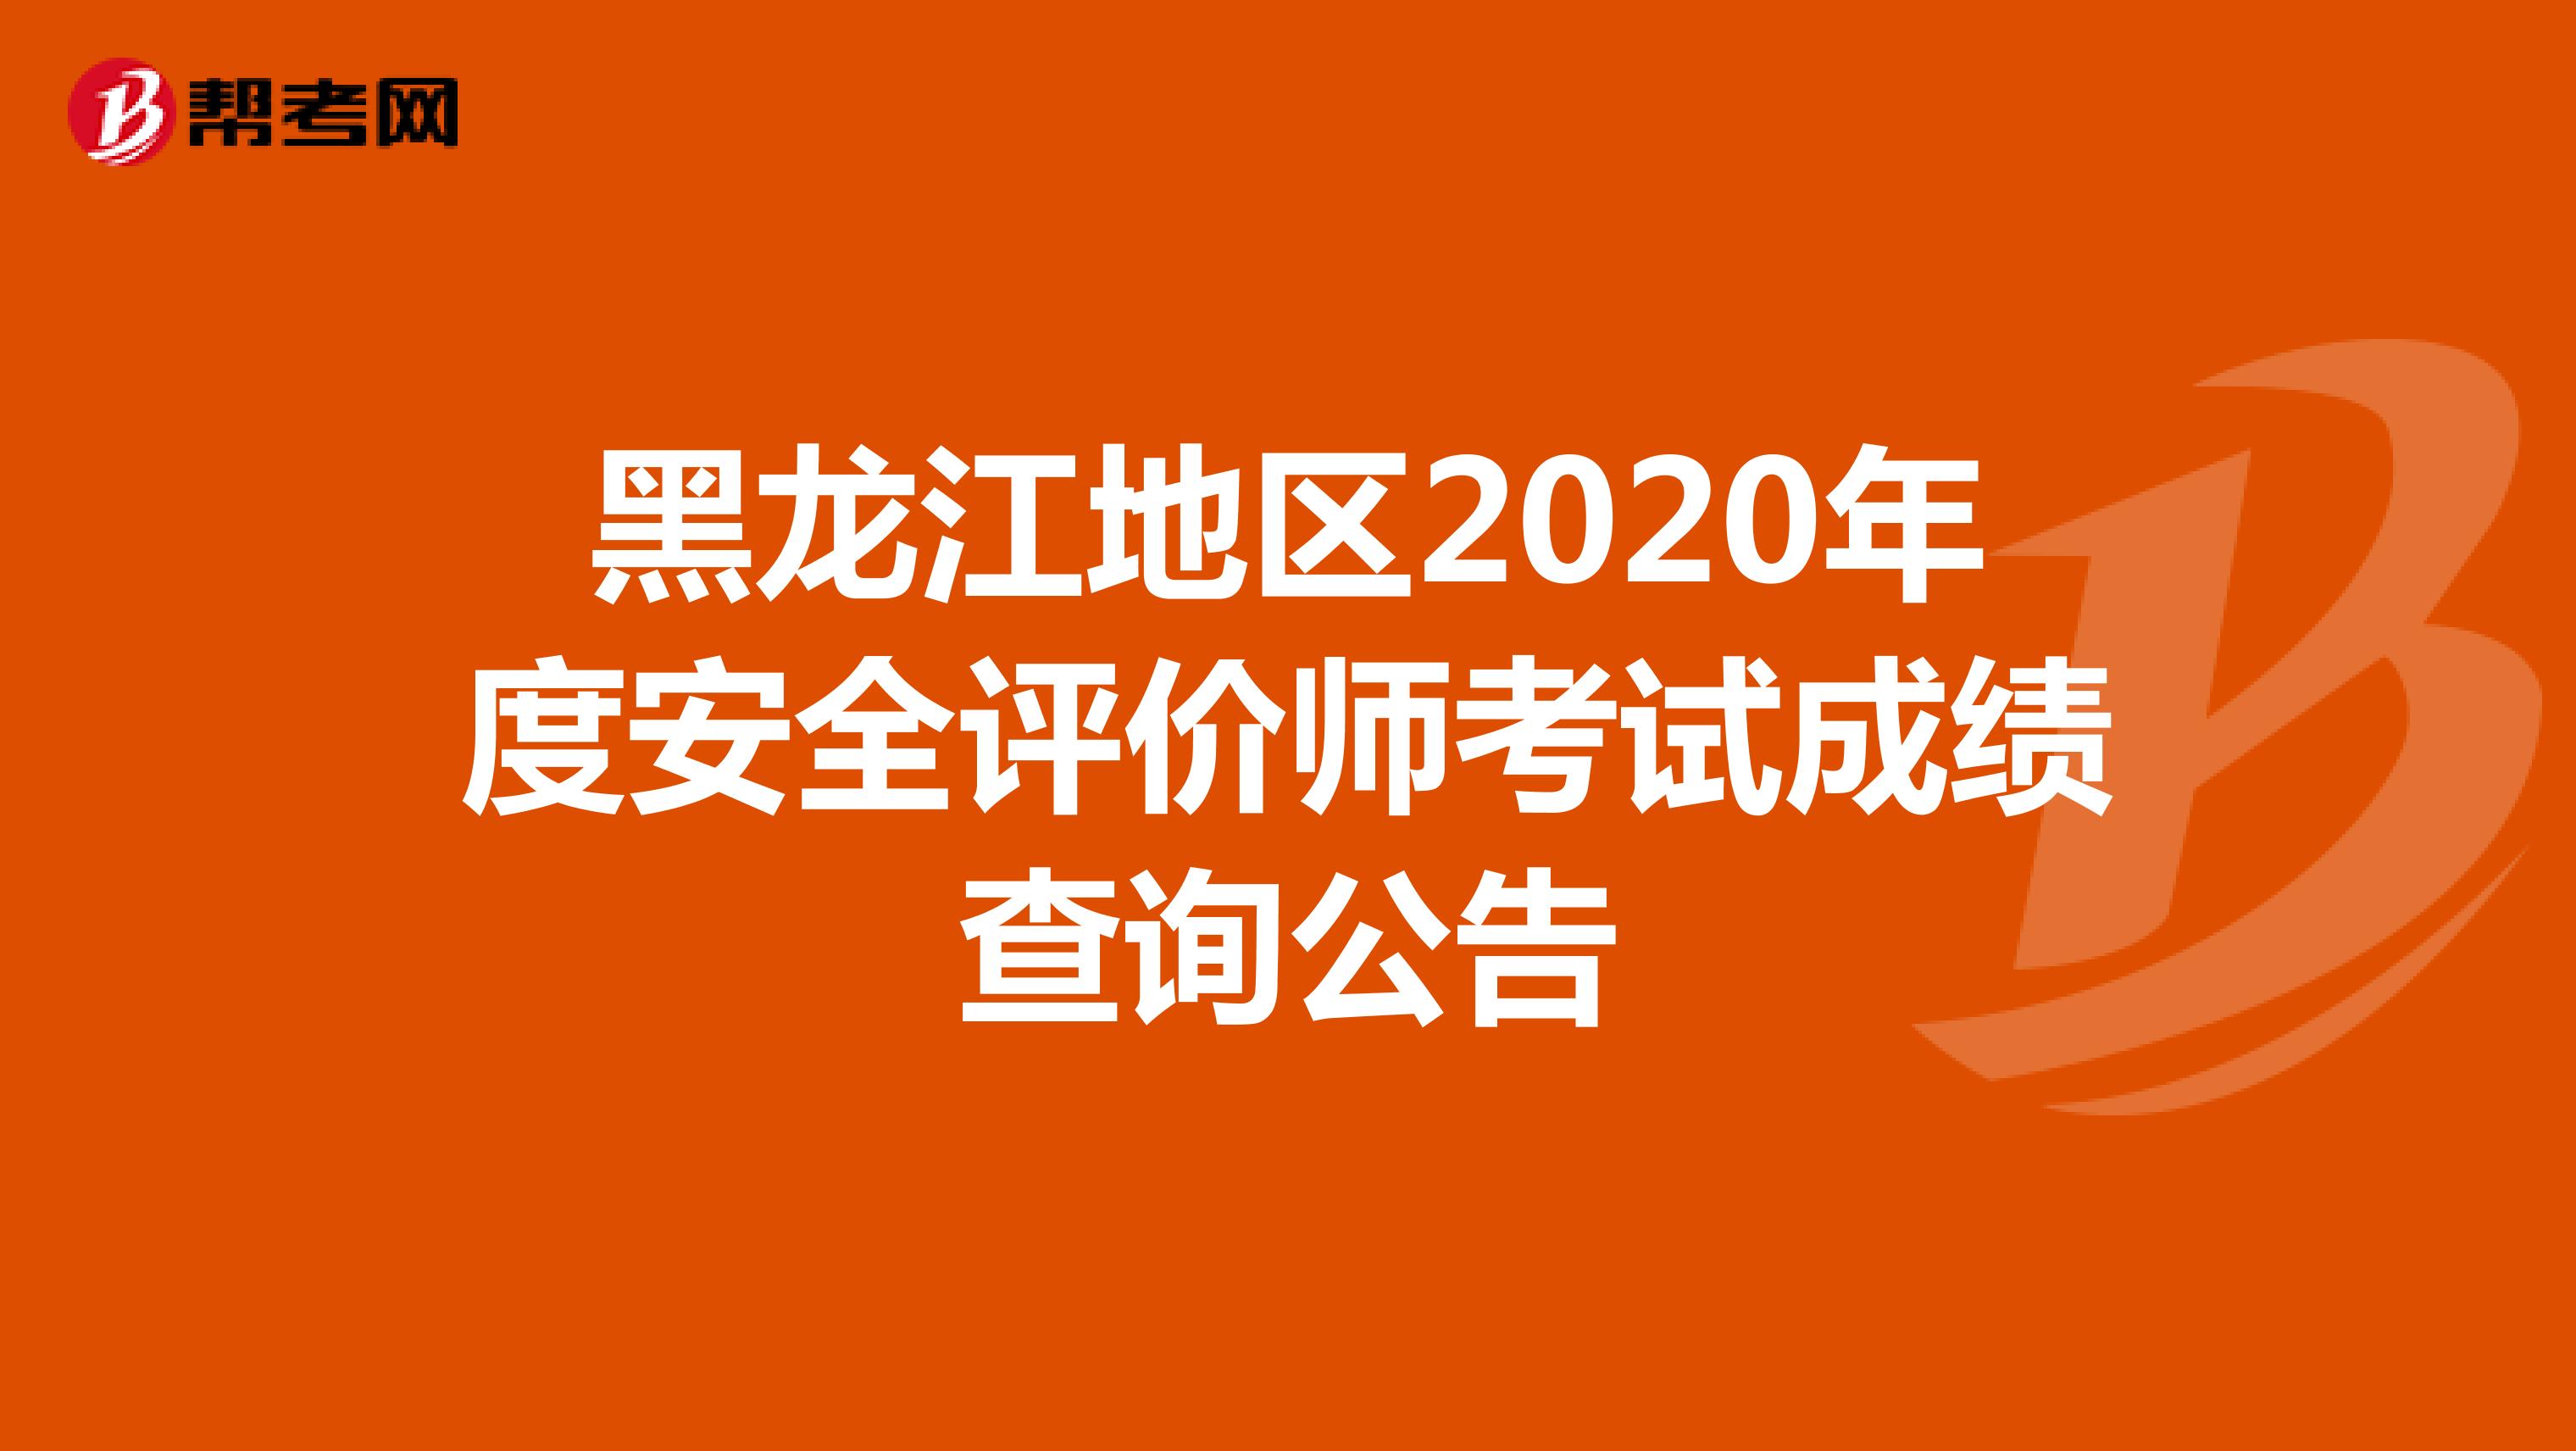 黑龙江地区2020年度安全评价师考试成绩查询公告